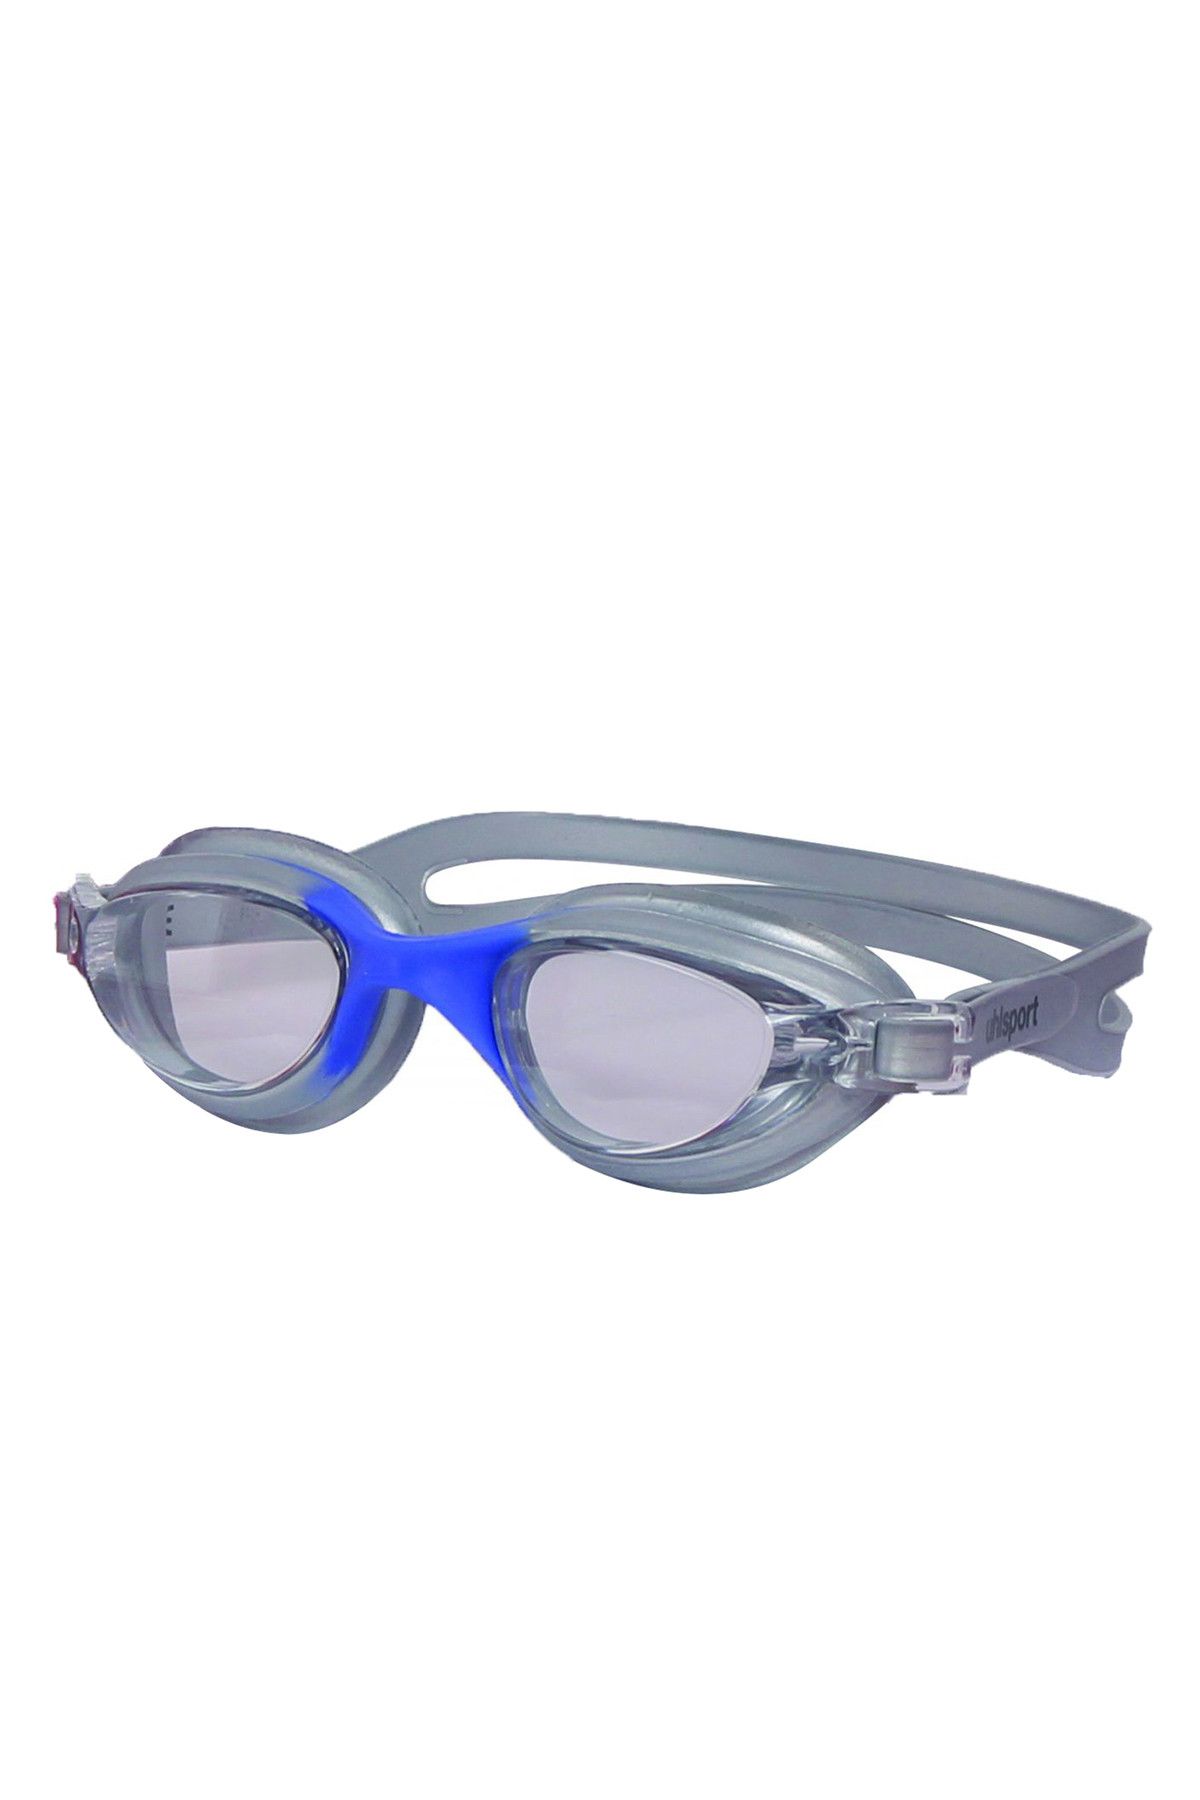 uhlsport Unisex Yüzücü Gözlüğü -  - 12.20.005.001.036.005